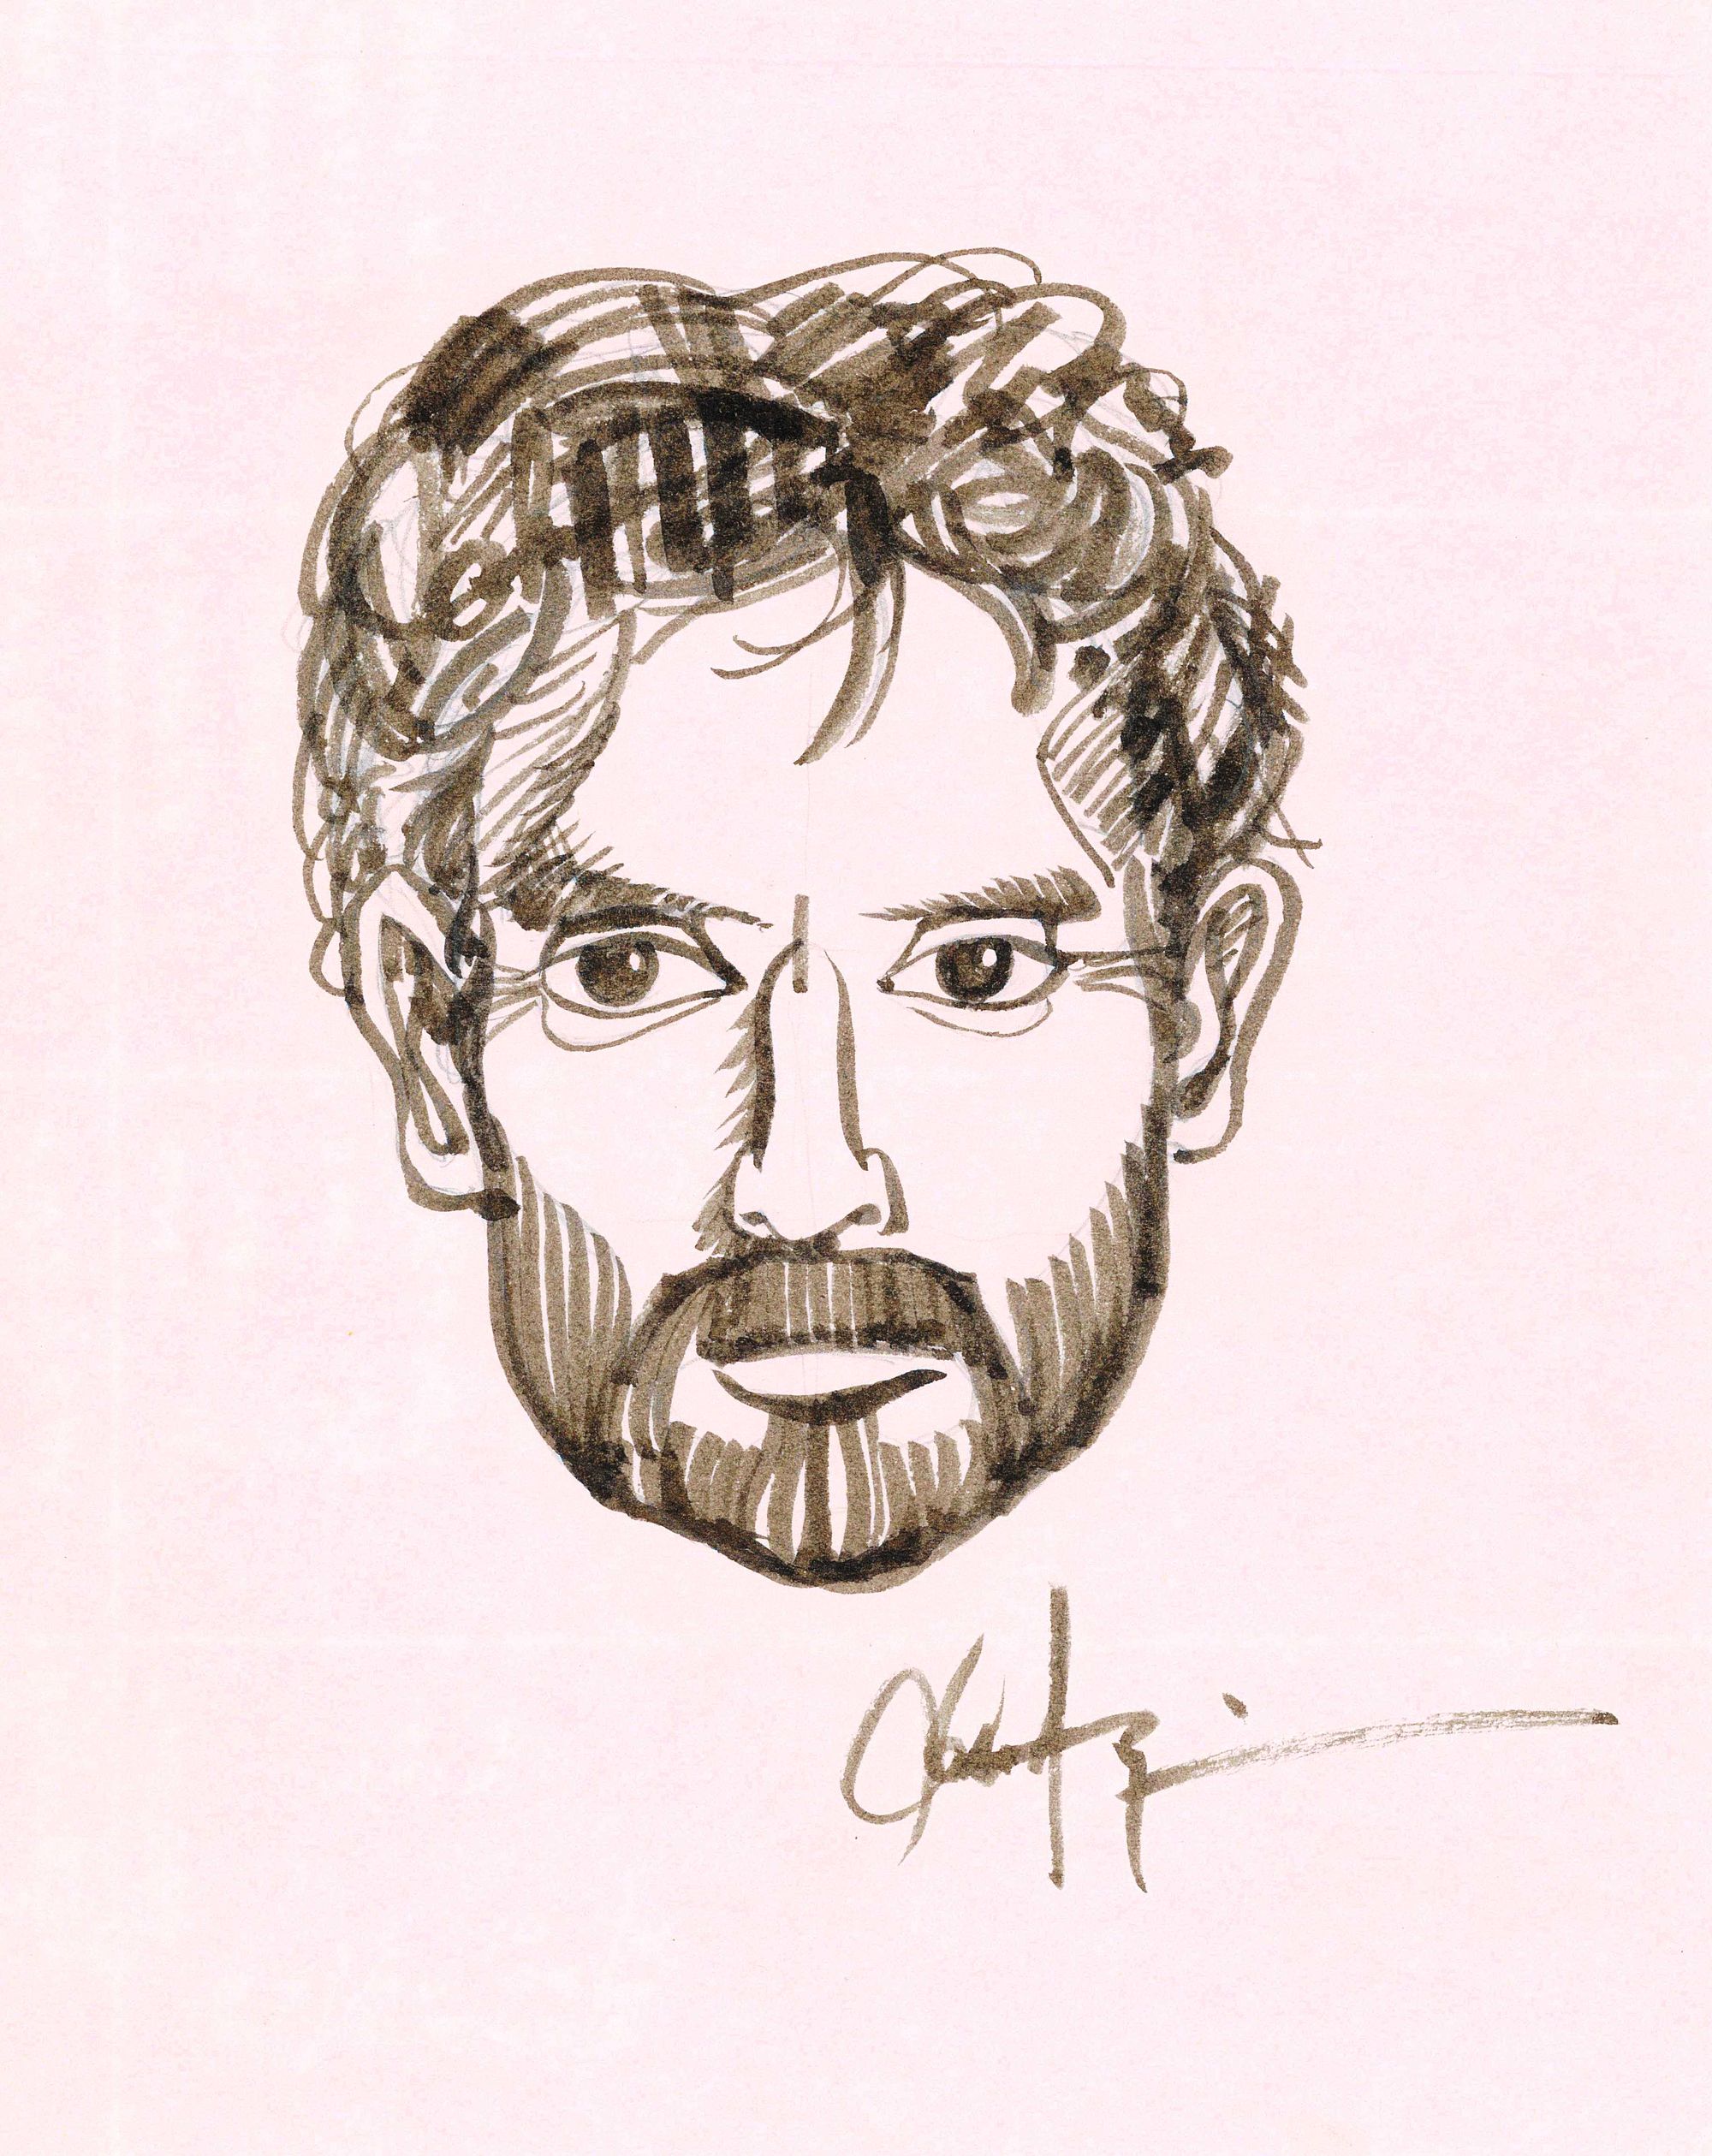 Pen-drawn self-portrait in a single colour.